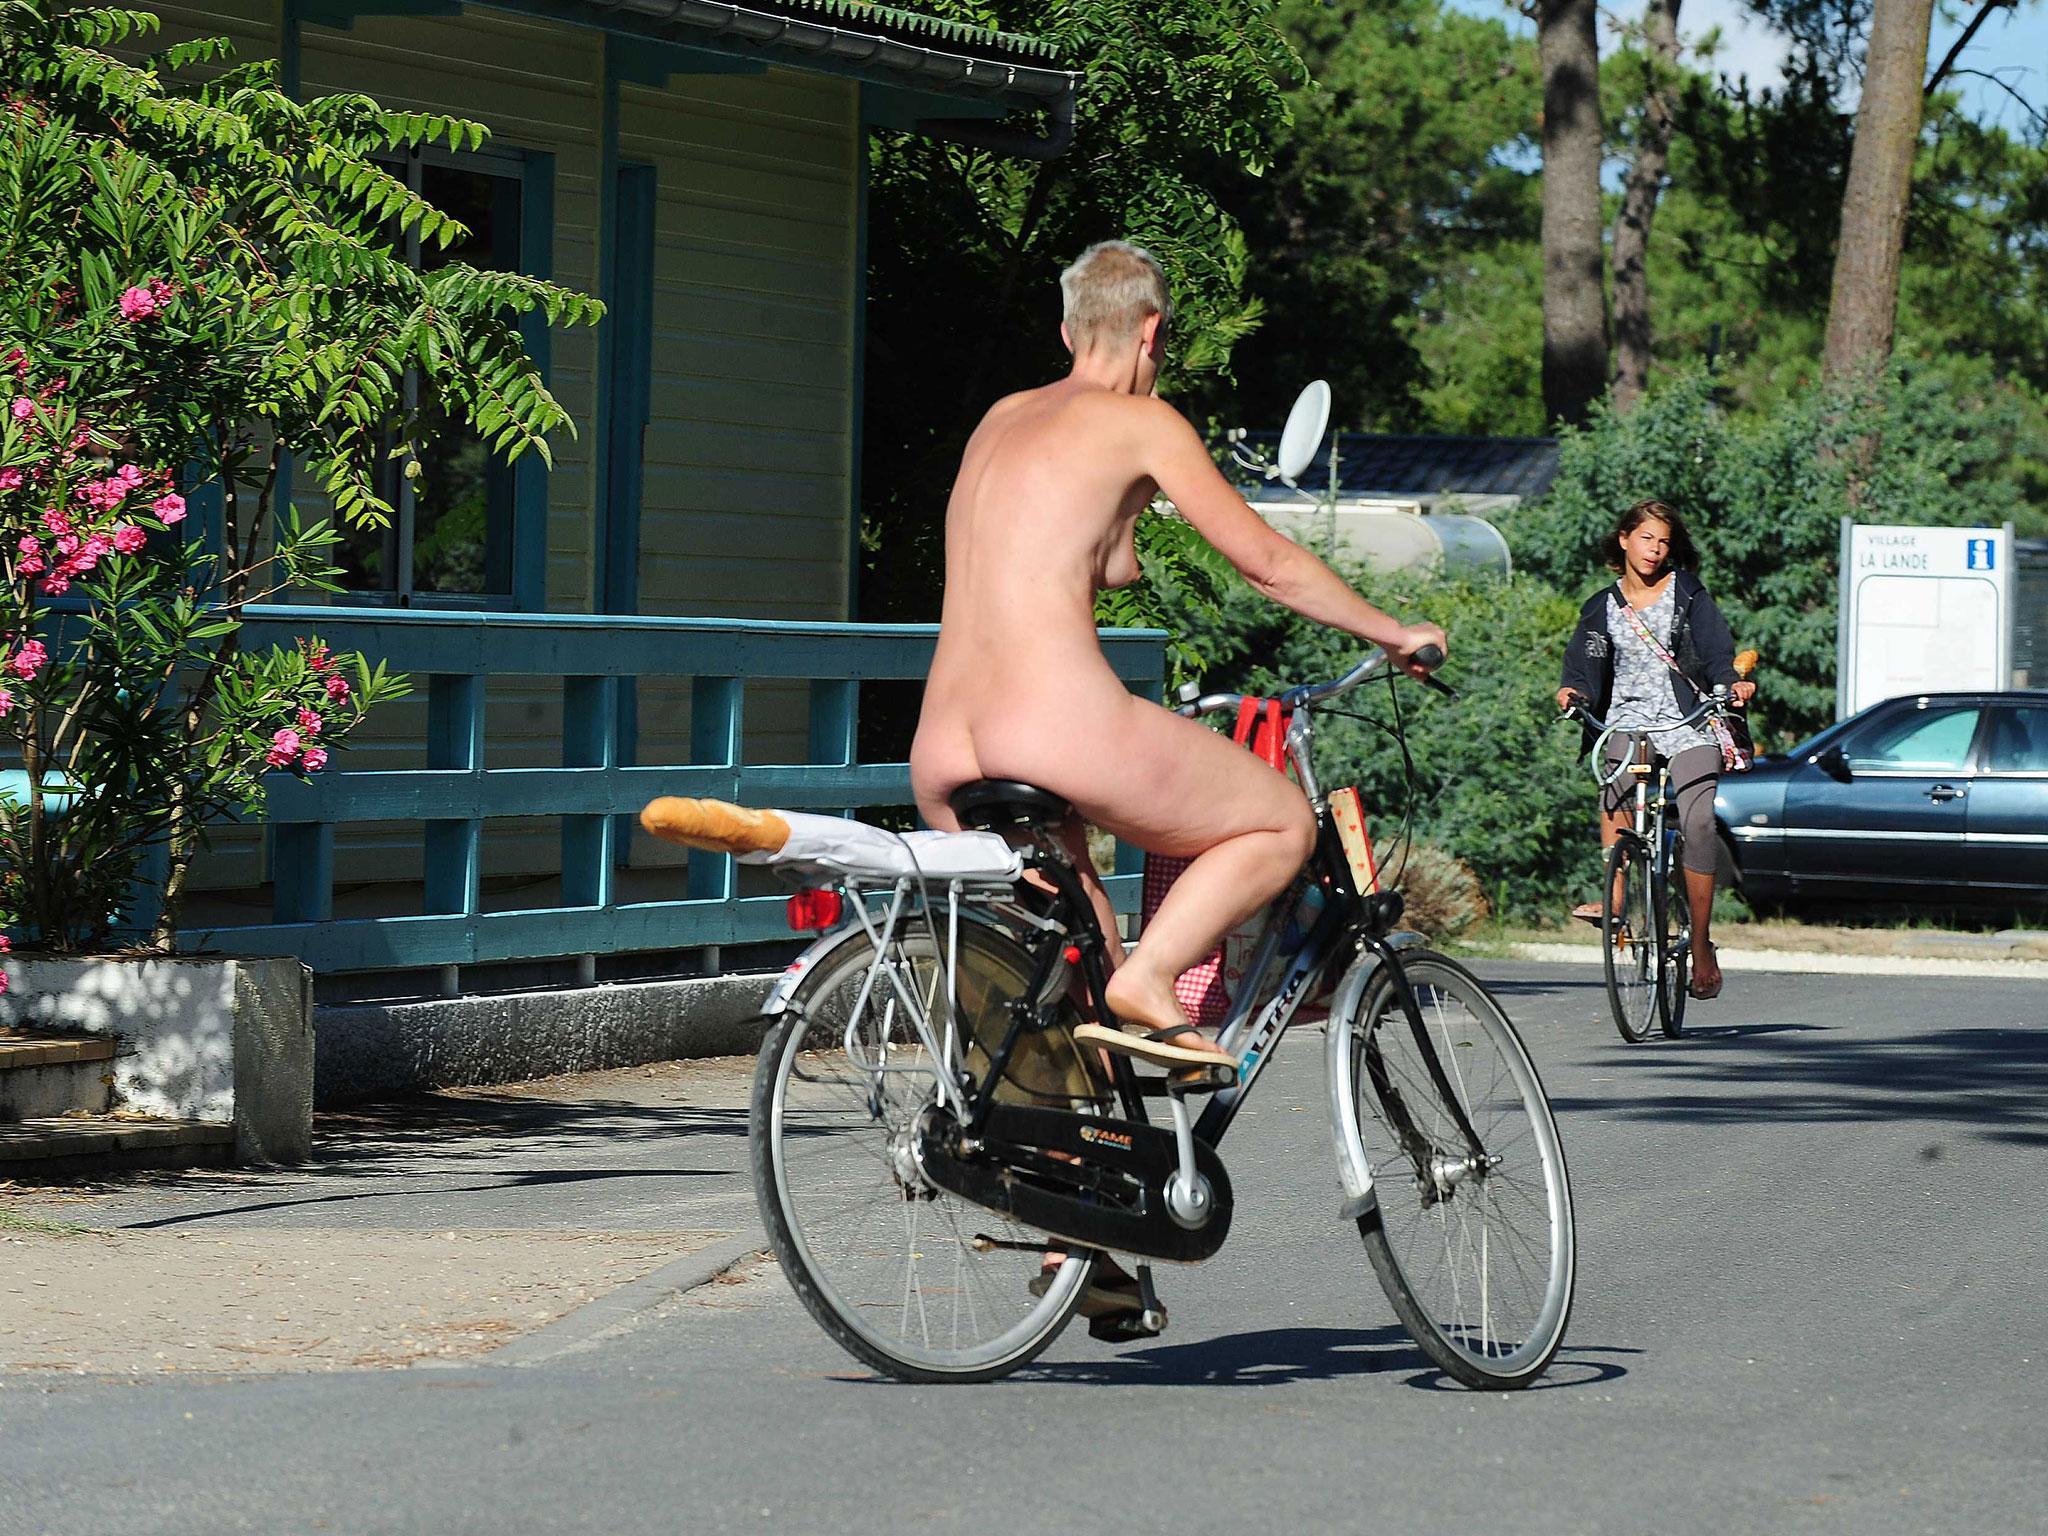 French Nudist Voyeur - Bois de Vincennes park in Paris is launching a nudist area ...